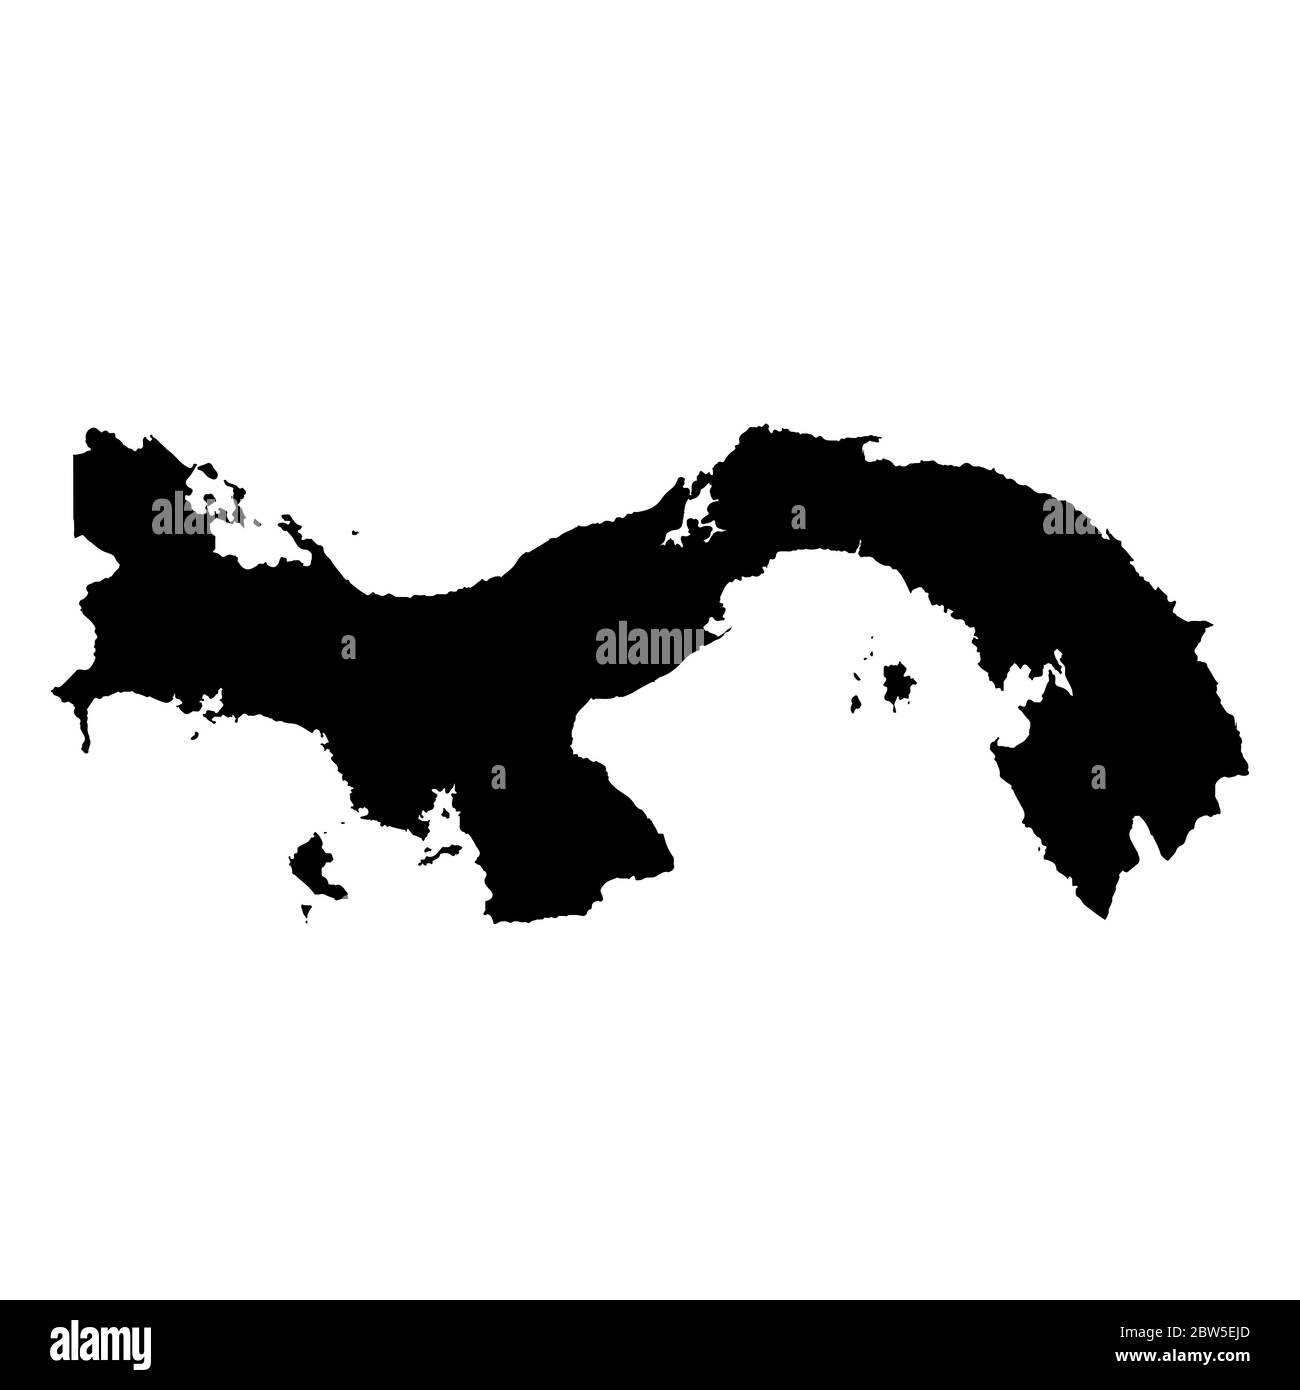 Vektorkarte Panama. Isolierte Vektorgrafik. Schwarz auf weißem Hintergrund. EPS 10-Abbildung. Stock Vektor